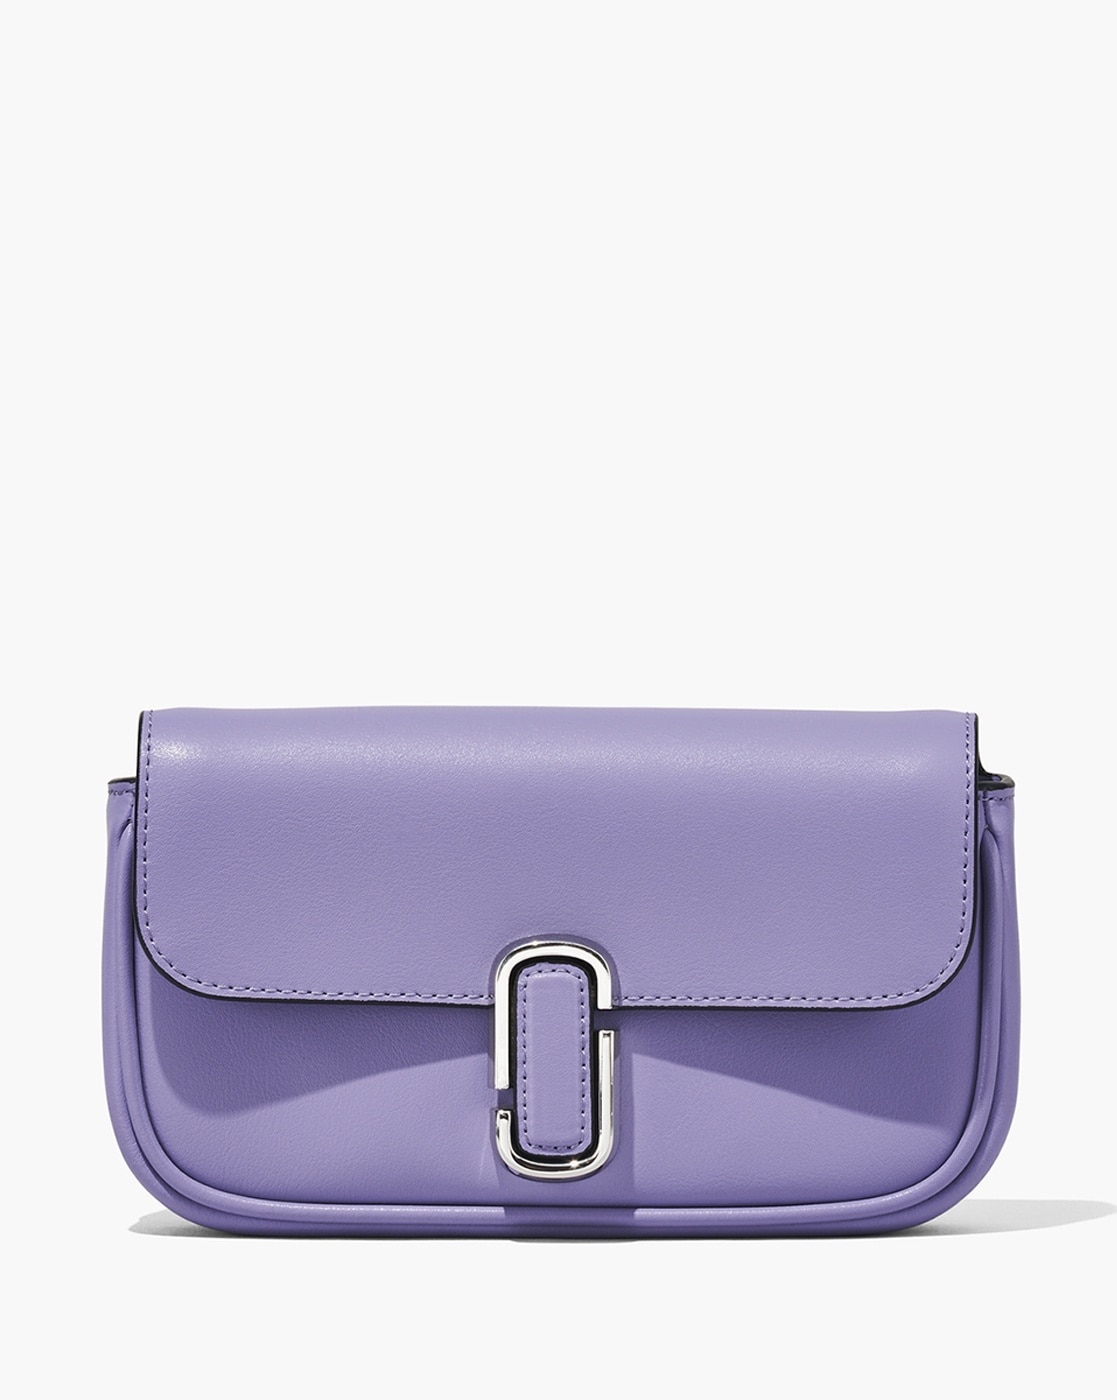 Michael Kors 35S9STVC2L Women's Shoulder Bag, Outlet, Light Purple, purple  : Clothing, Shoes & Jewelry - Amazon.co.jp